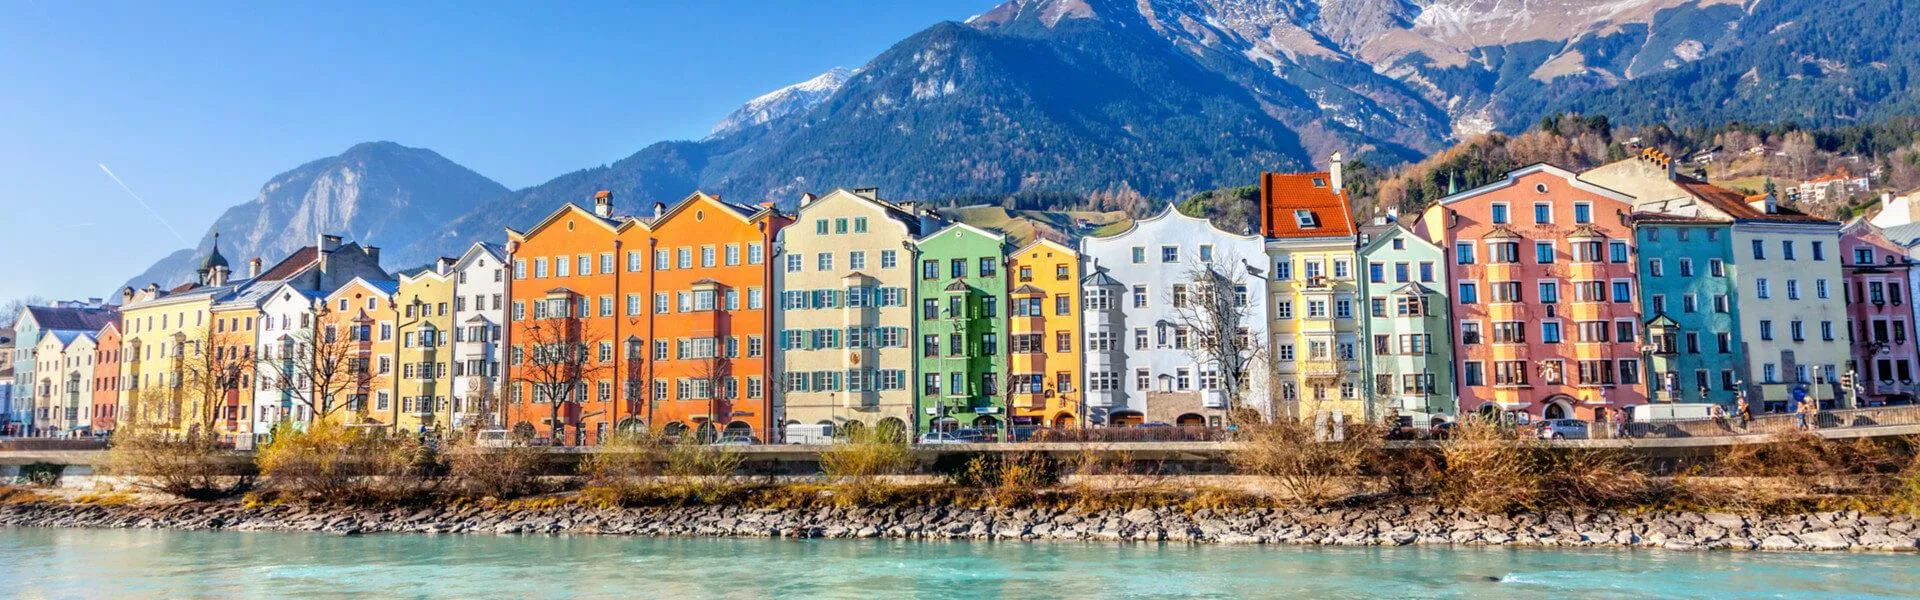 Vakantiehuizen Innsbruck